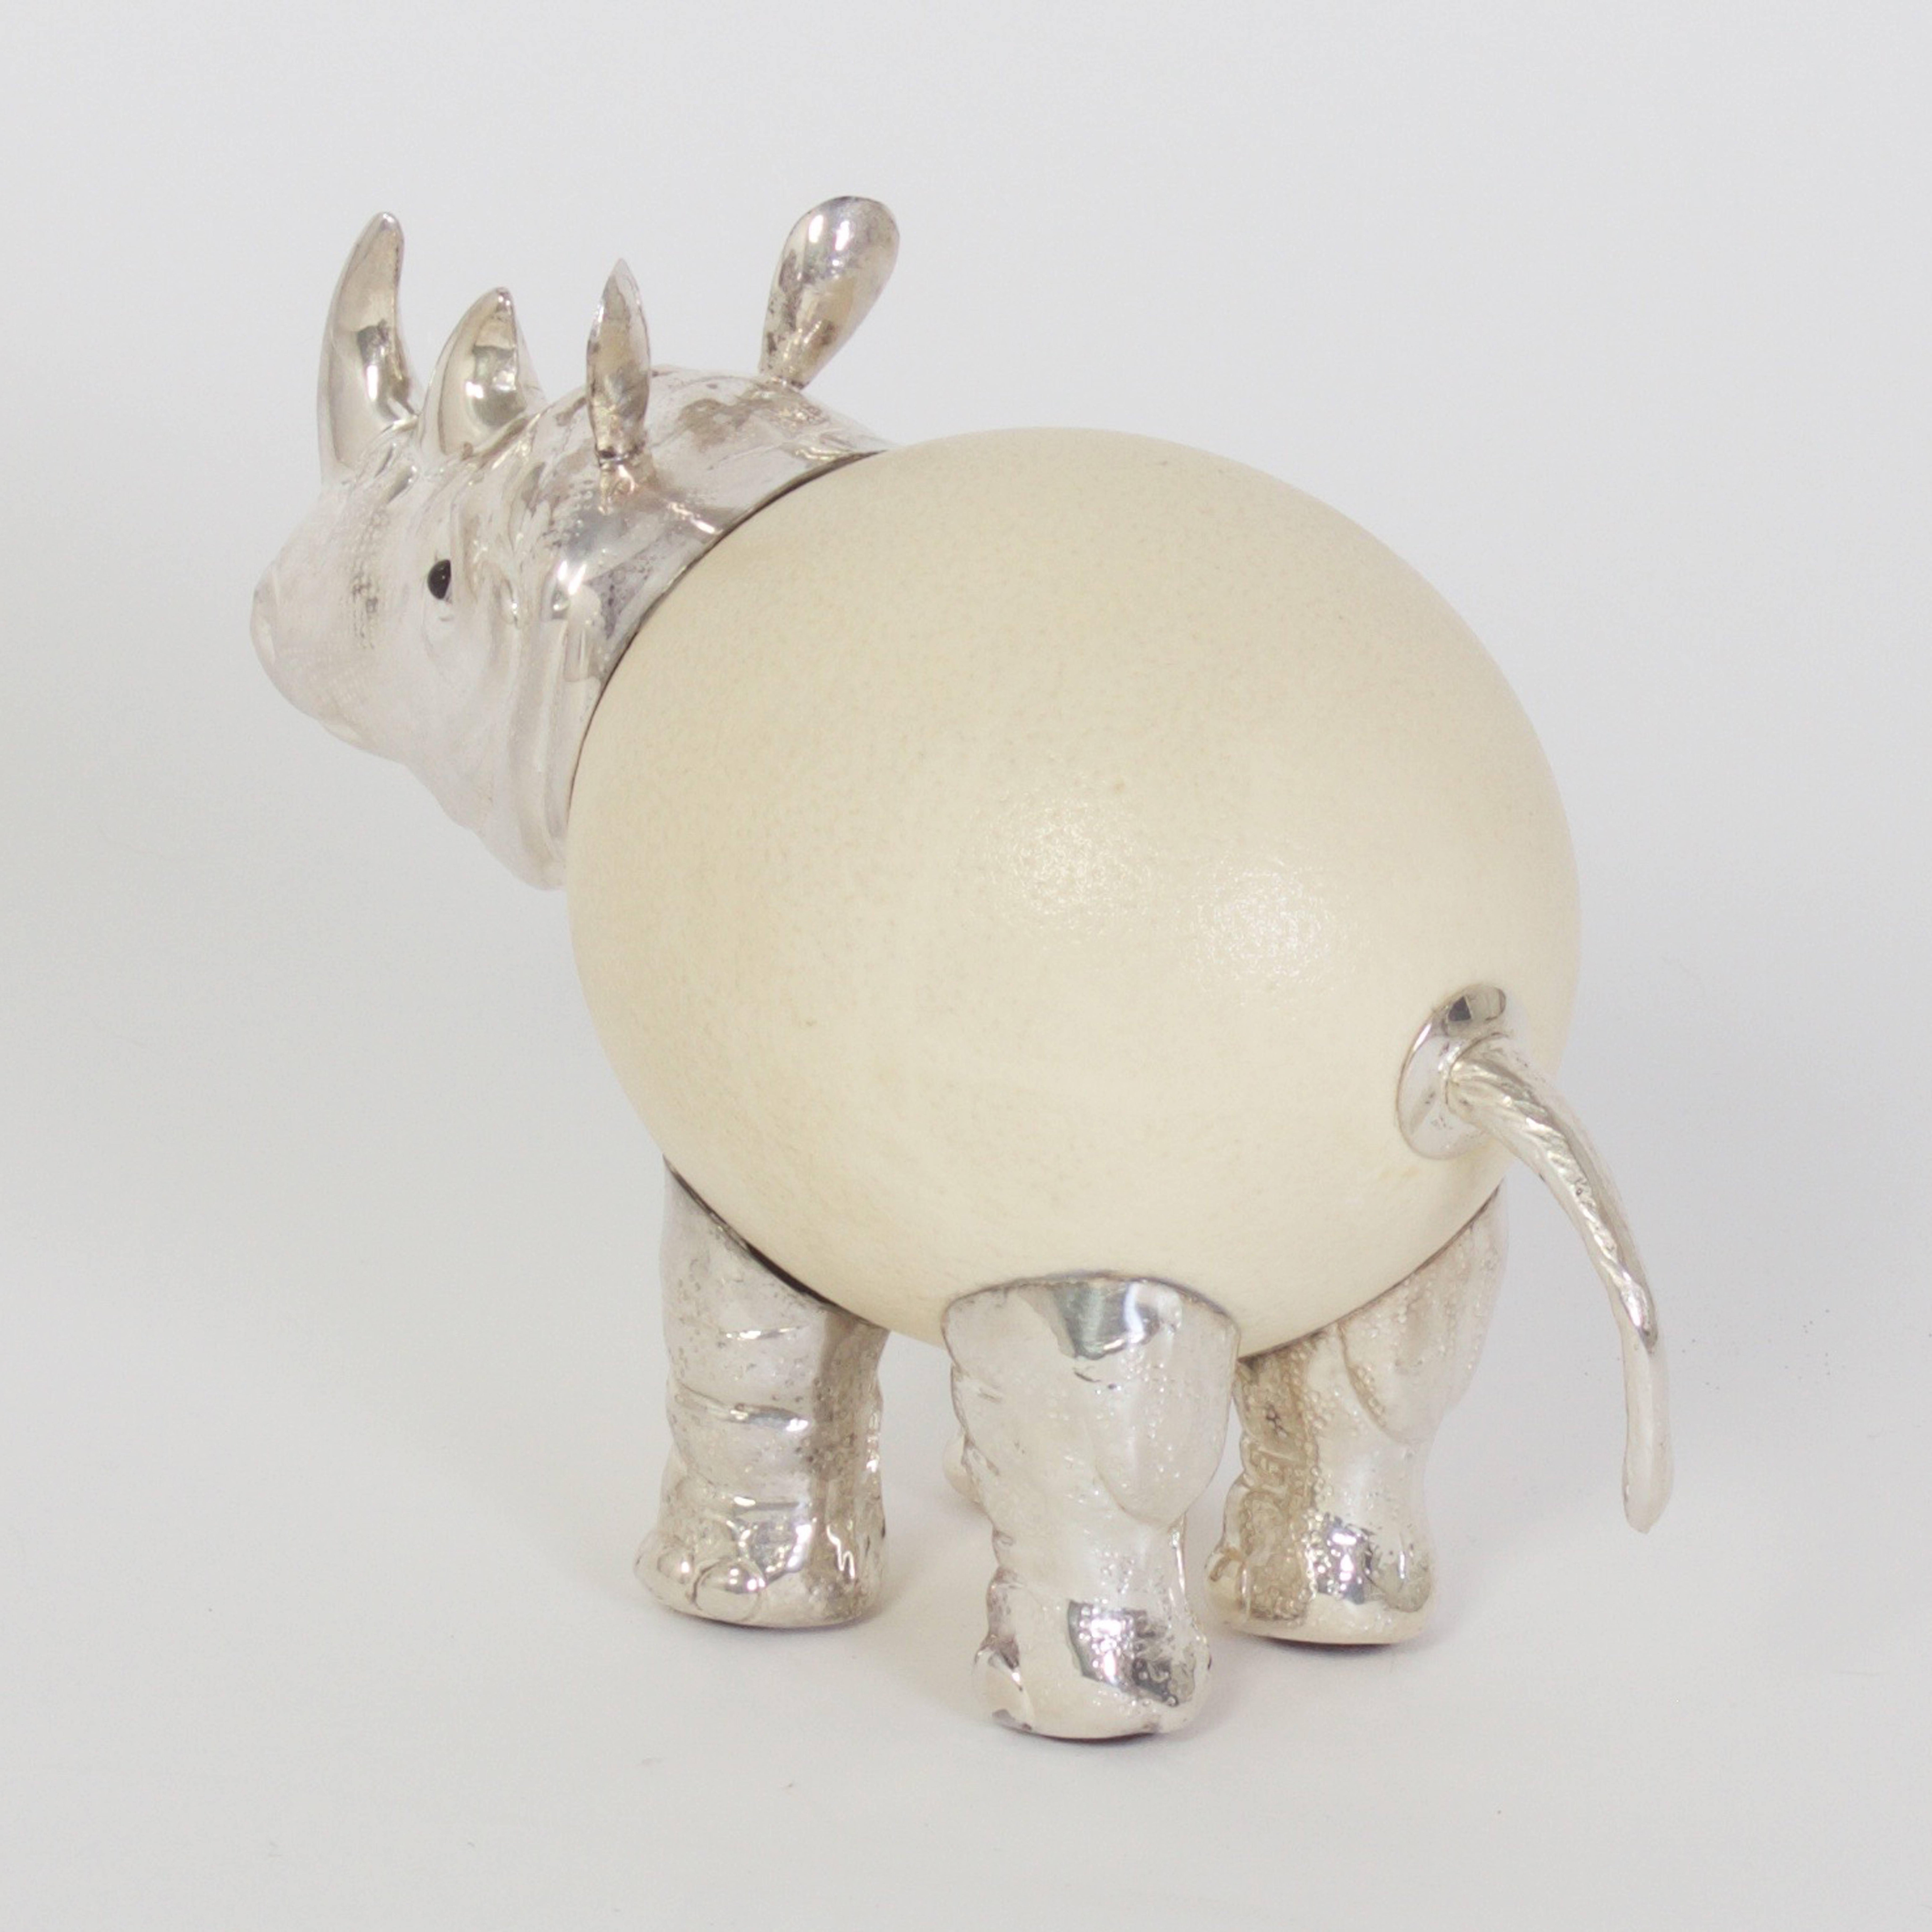 Organic Modern Vintage Ostrich Egg Rhinoceros by Binazzi